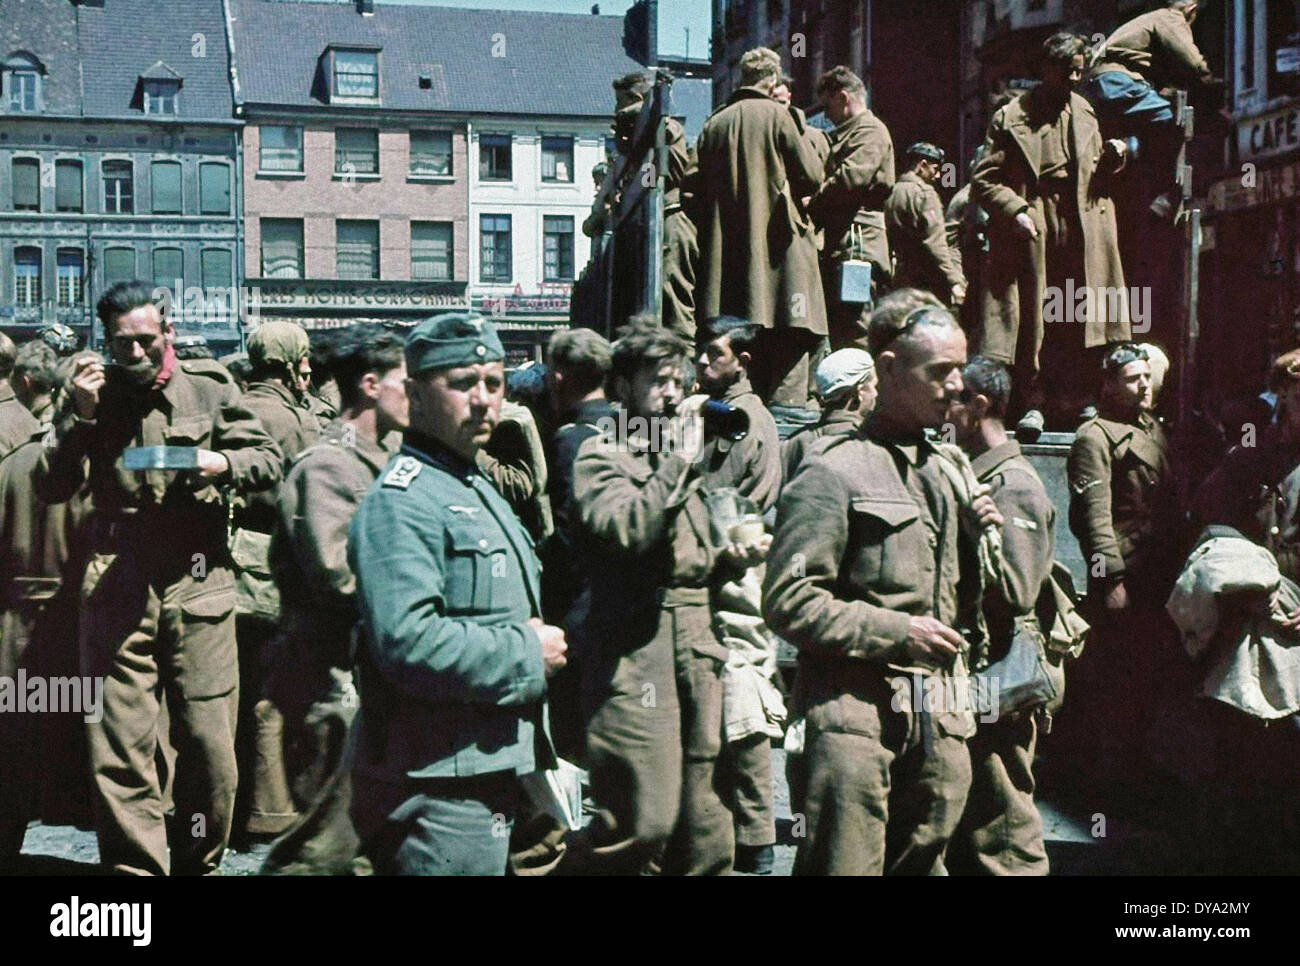 Historique de la DEUXIÈME GUERRE MONDIALE seconde guerre mondiale guerre seconde guerre mondiale bataille lutte Dunkerque les prisonniers britanniques militaires soldats allemands nazis 1940 N Banque D'Images